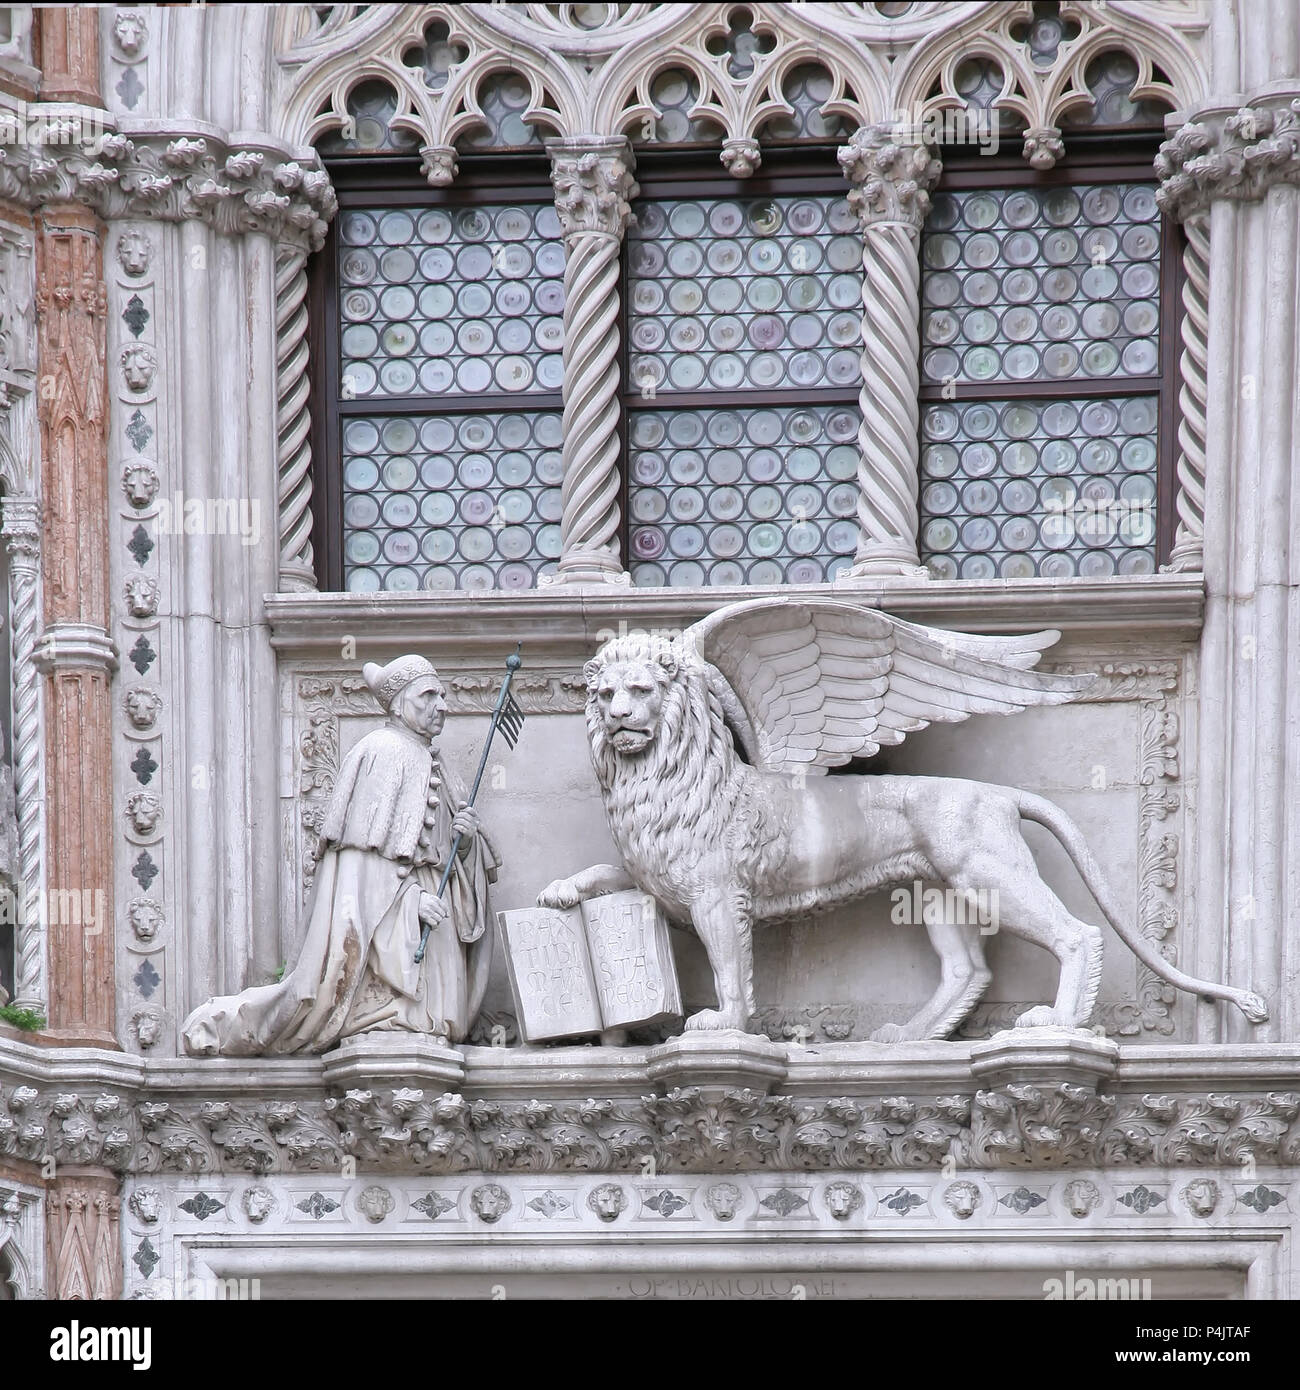 La sculpture à la Porta della Carta du Palais des Doges, Venise : le doge agenouillé devant Saint Mark's lion, le symbole de Venise Banque D'Images